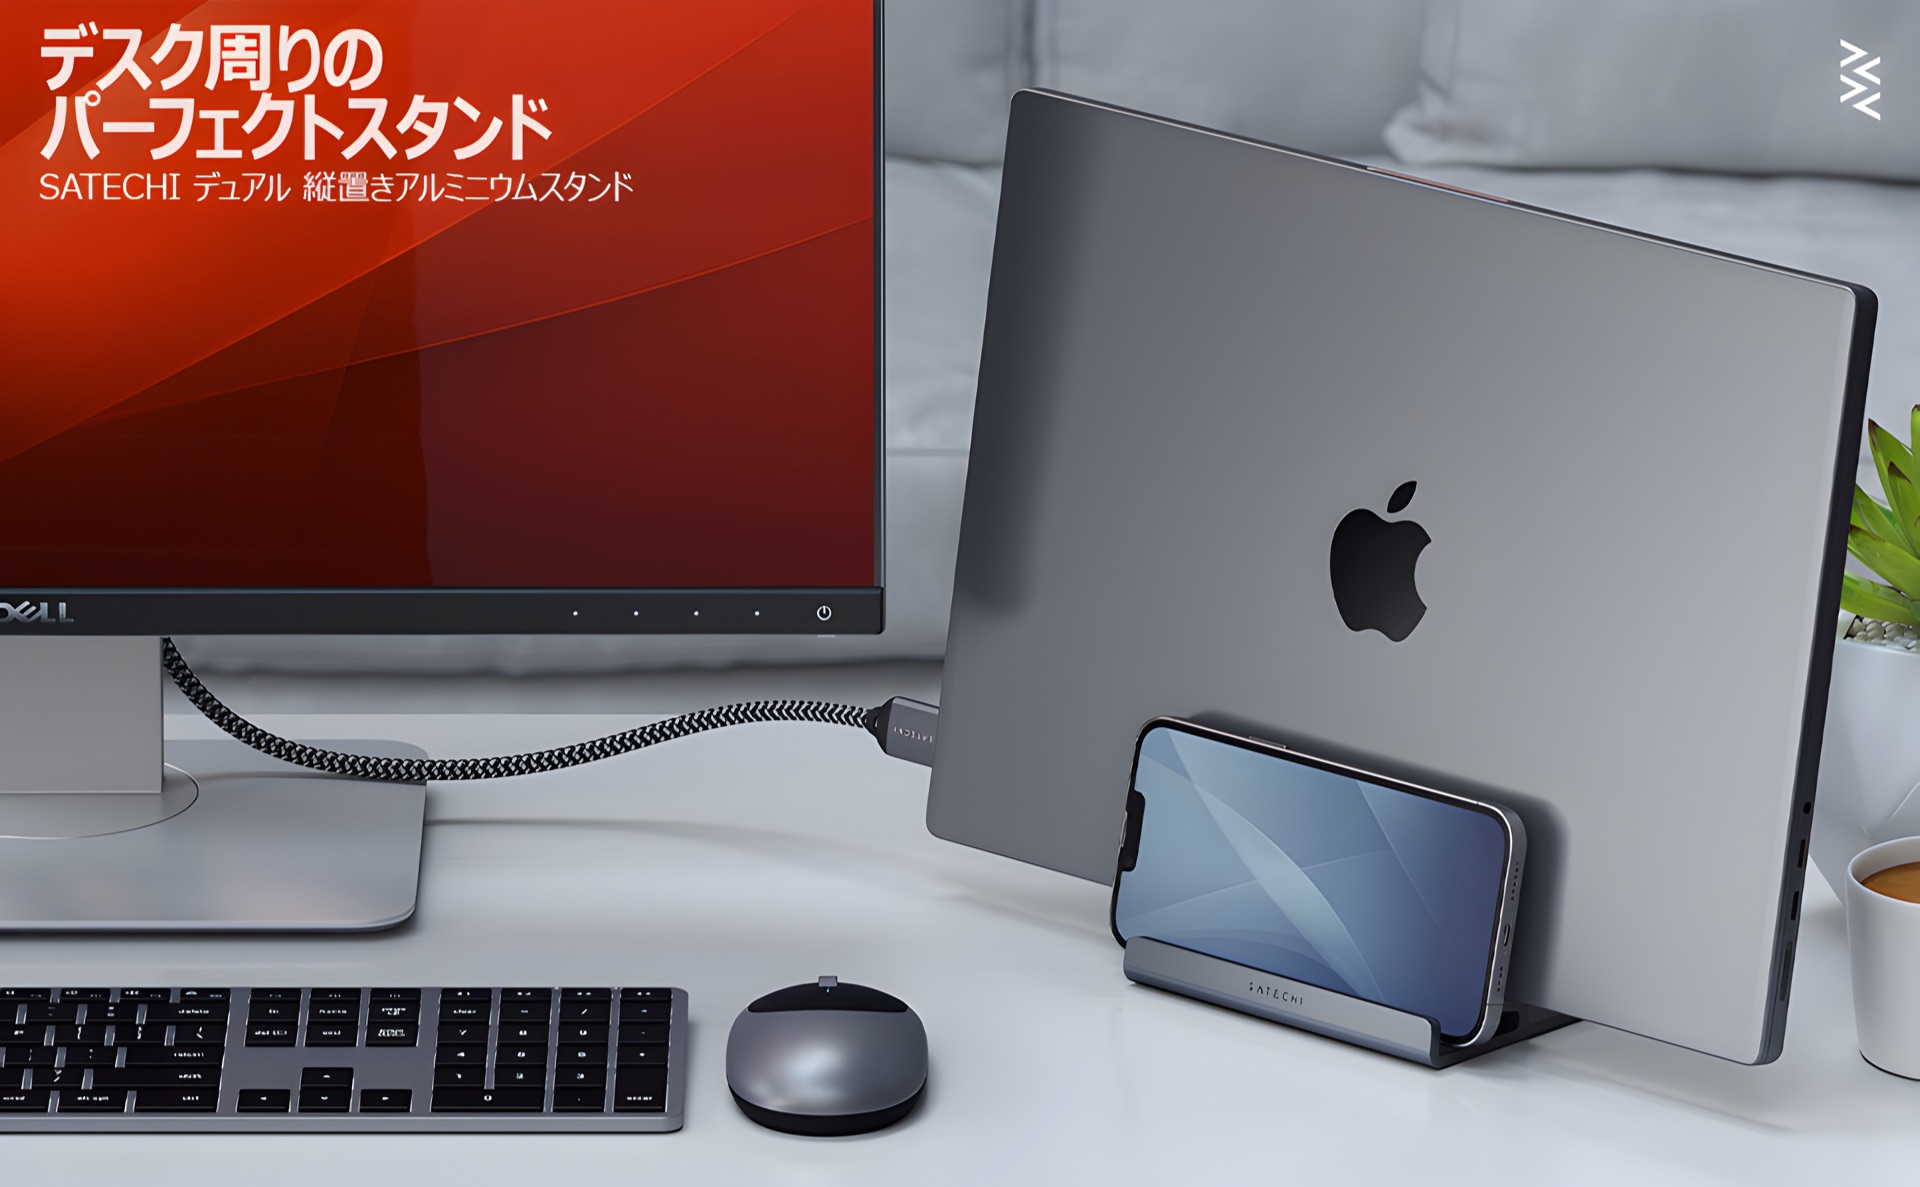 Satechi、MacBookとiPadなど合計2台のデバイスを一緒に収納できる縦置きスタンド「Satechi デュアル バーティカル アルミニウム  スタンド」を日本でも発売開始。